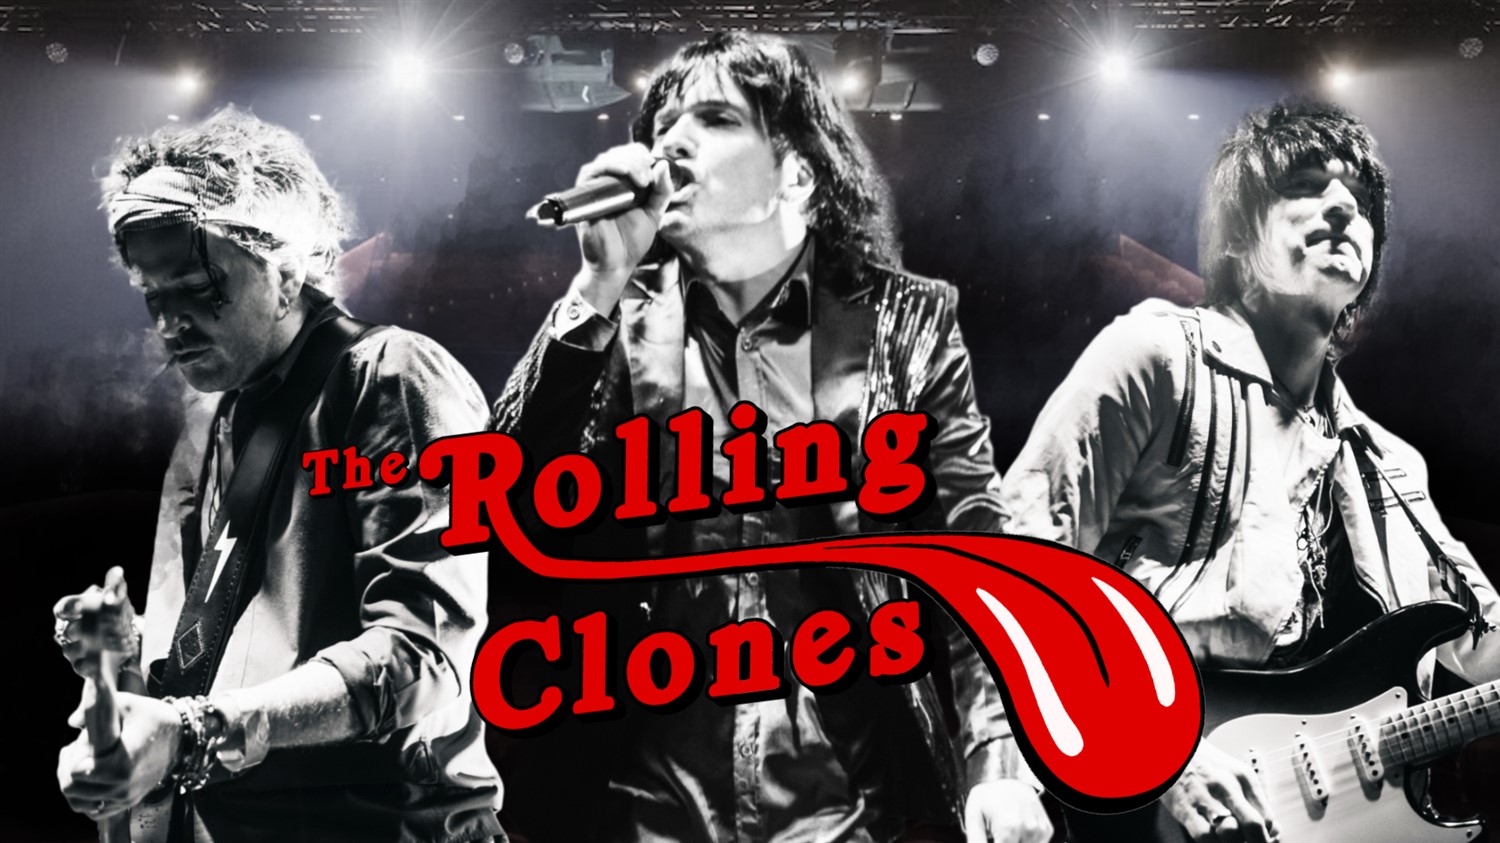 The Rolling Clones After Party and DJ on jun. 21, 19:30@Standard capacity - Elegir asientoCompra entradas y obtén información enSutton Coldfield Town Hall 